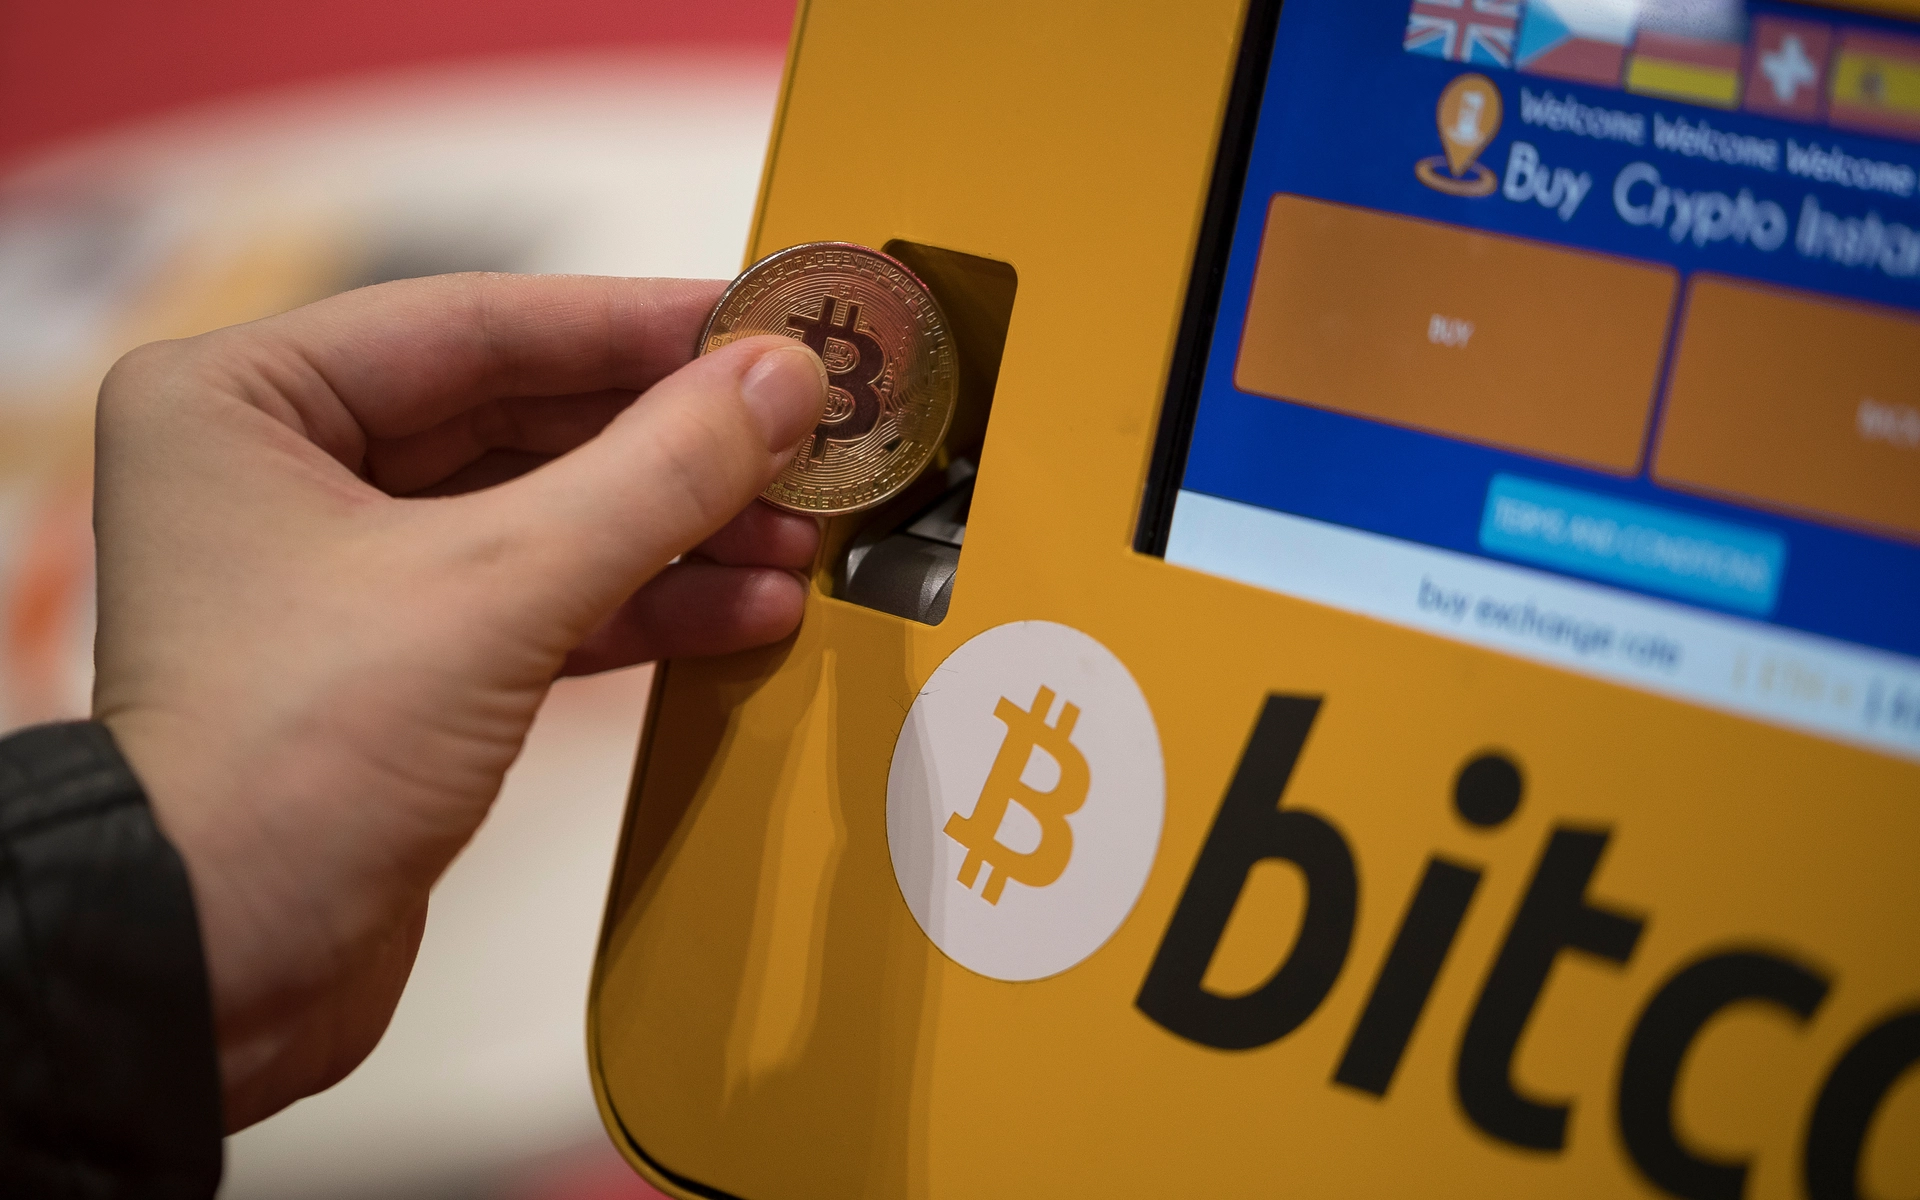 Bitcoin ATM'leri, insanların fiziksel para kullanarak Bitcoin gibi dijital para birimlerini satın alabilecekleri veya satabilecekleri otomatik makinelerdir. Geleneksel ATM'ler gibi çalışırlar, ancak bunlar Bitcoin işlemleri yaparlar.